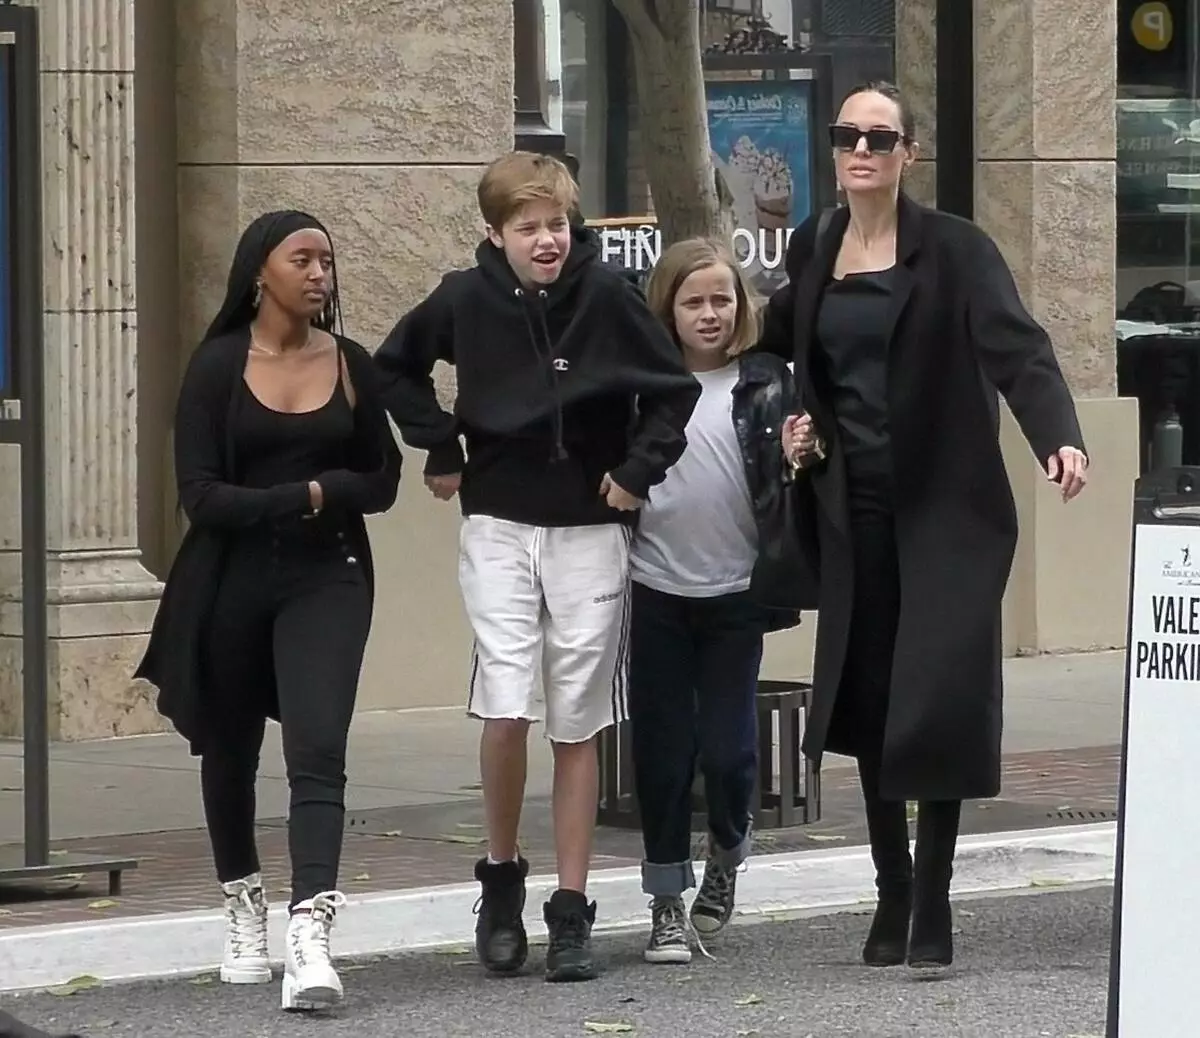 แฟน ๆ ประณาม Angelina Jolie สำหรับรูปใหม่ของลูกชาย: 